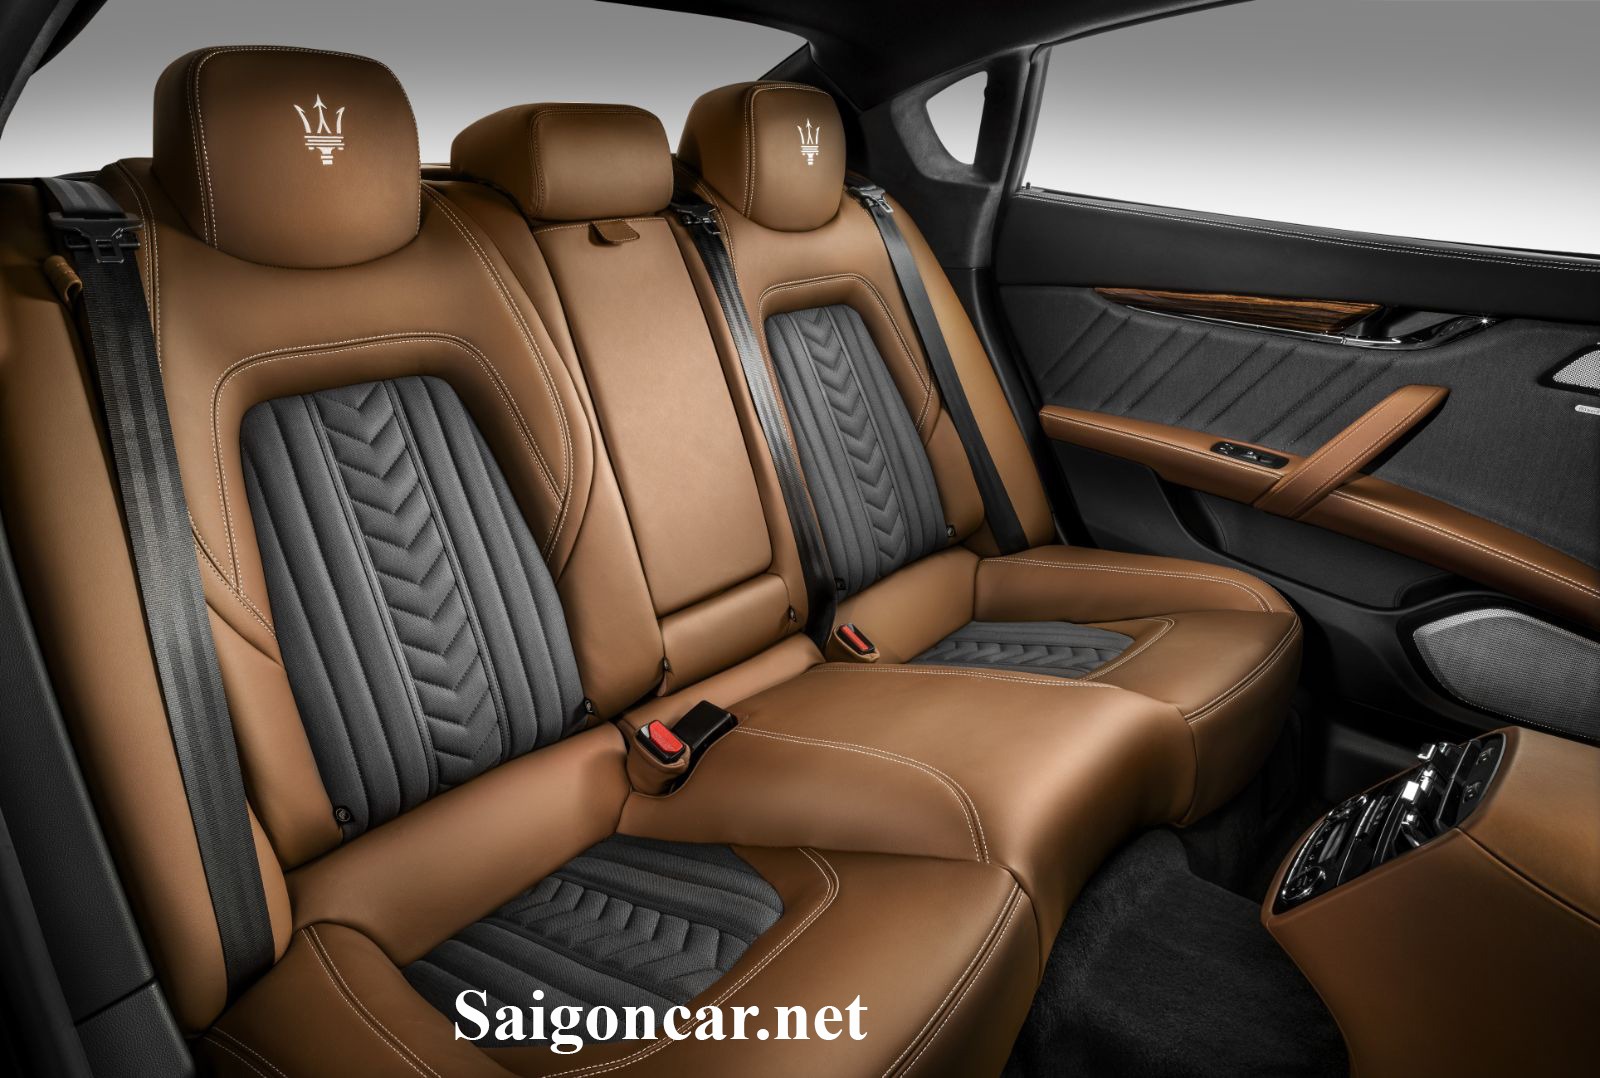 Maserati Quattroporte Nội thất sang trọng lịch lãm của thương hiệu xe sang đến từ Ý